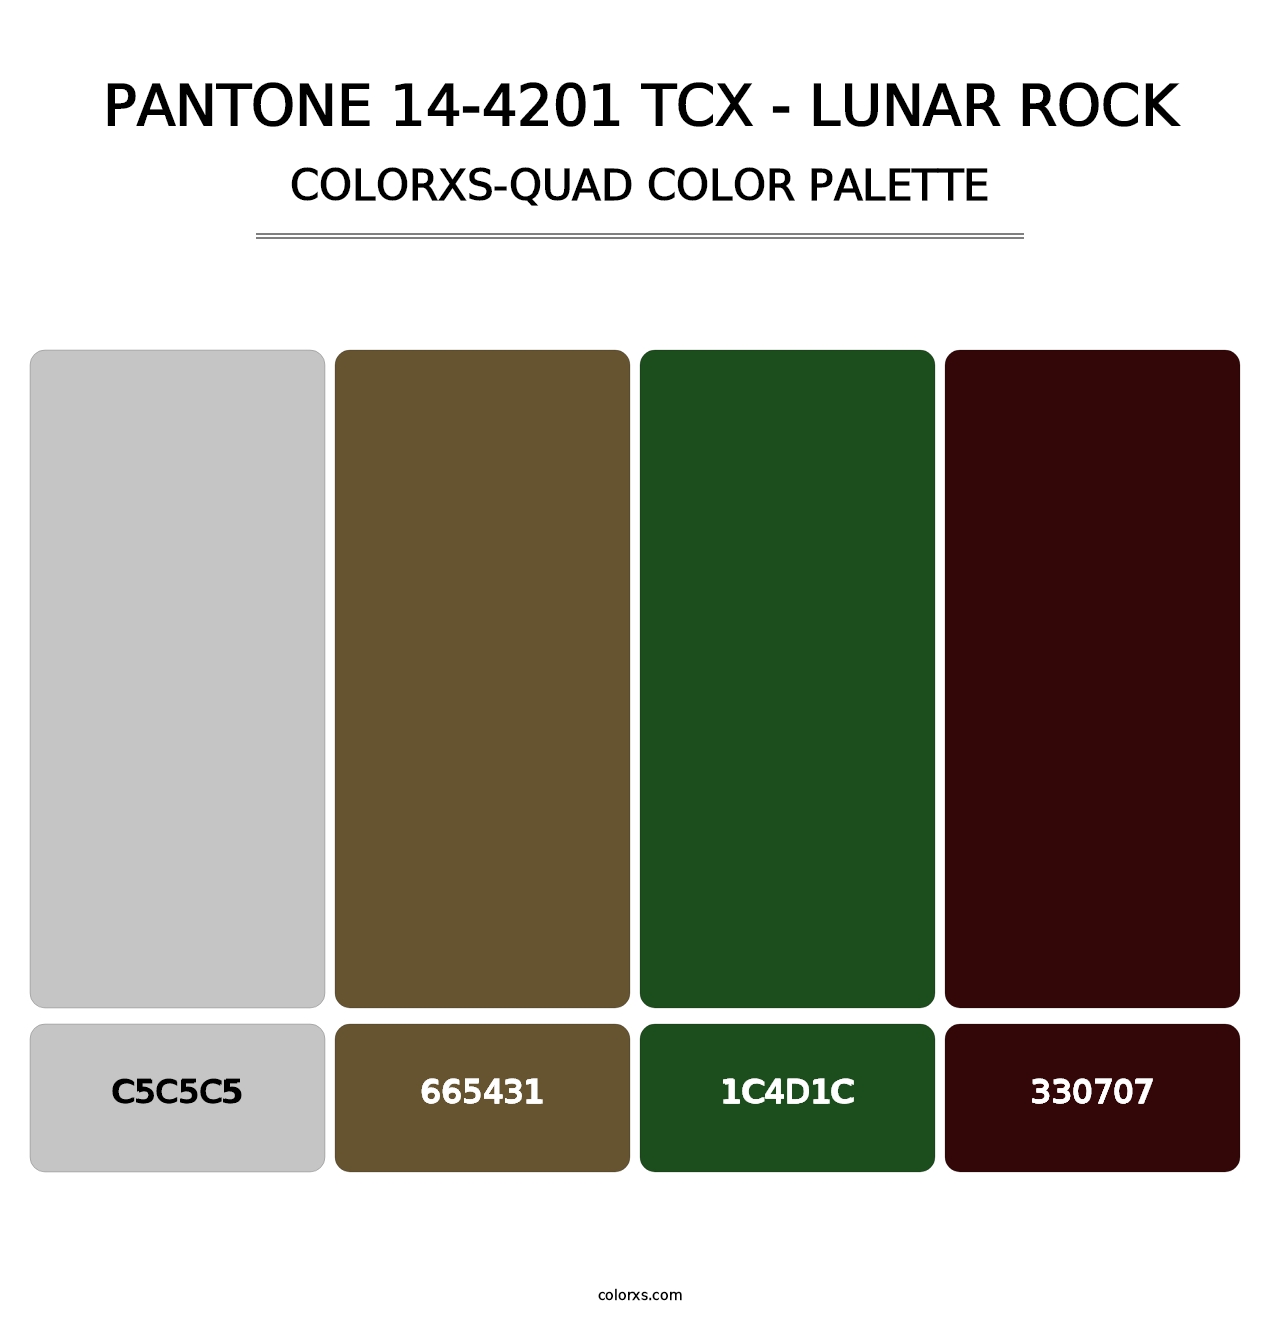 PANTONE 14-4201 TCX - Lunar Rock - Colorxs Quad Palette